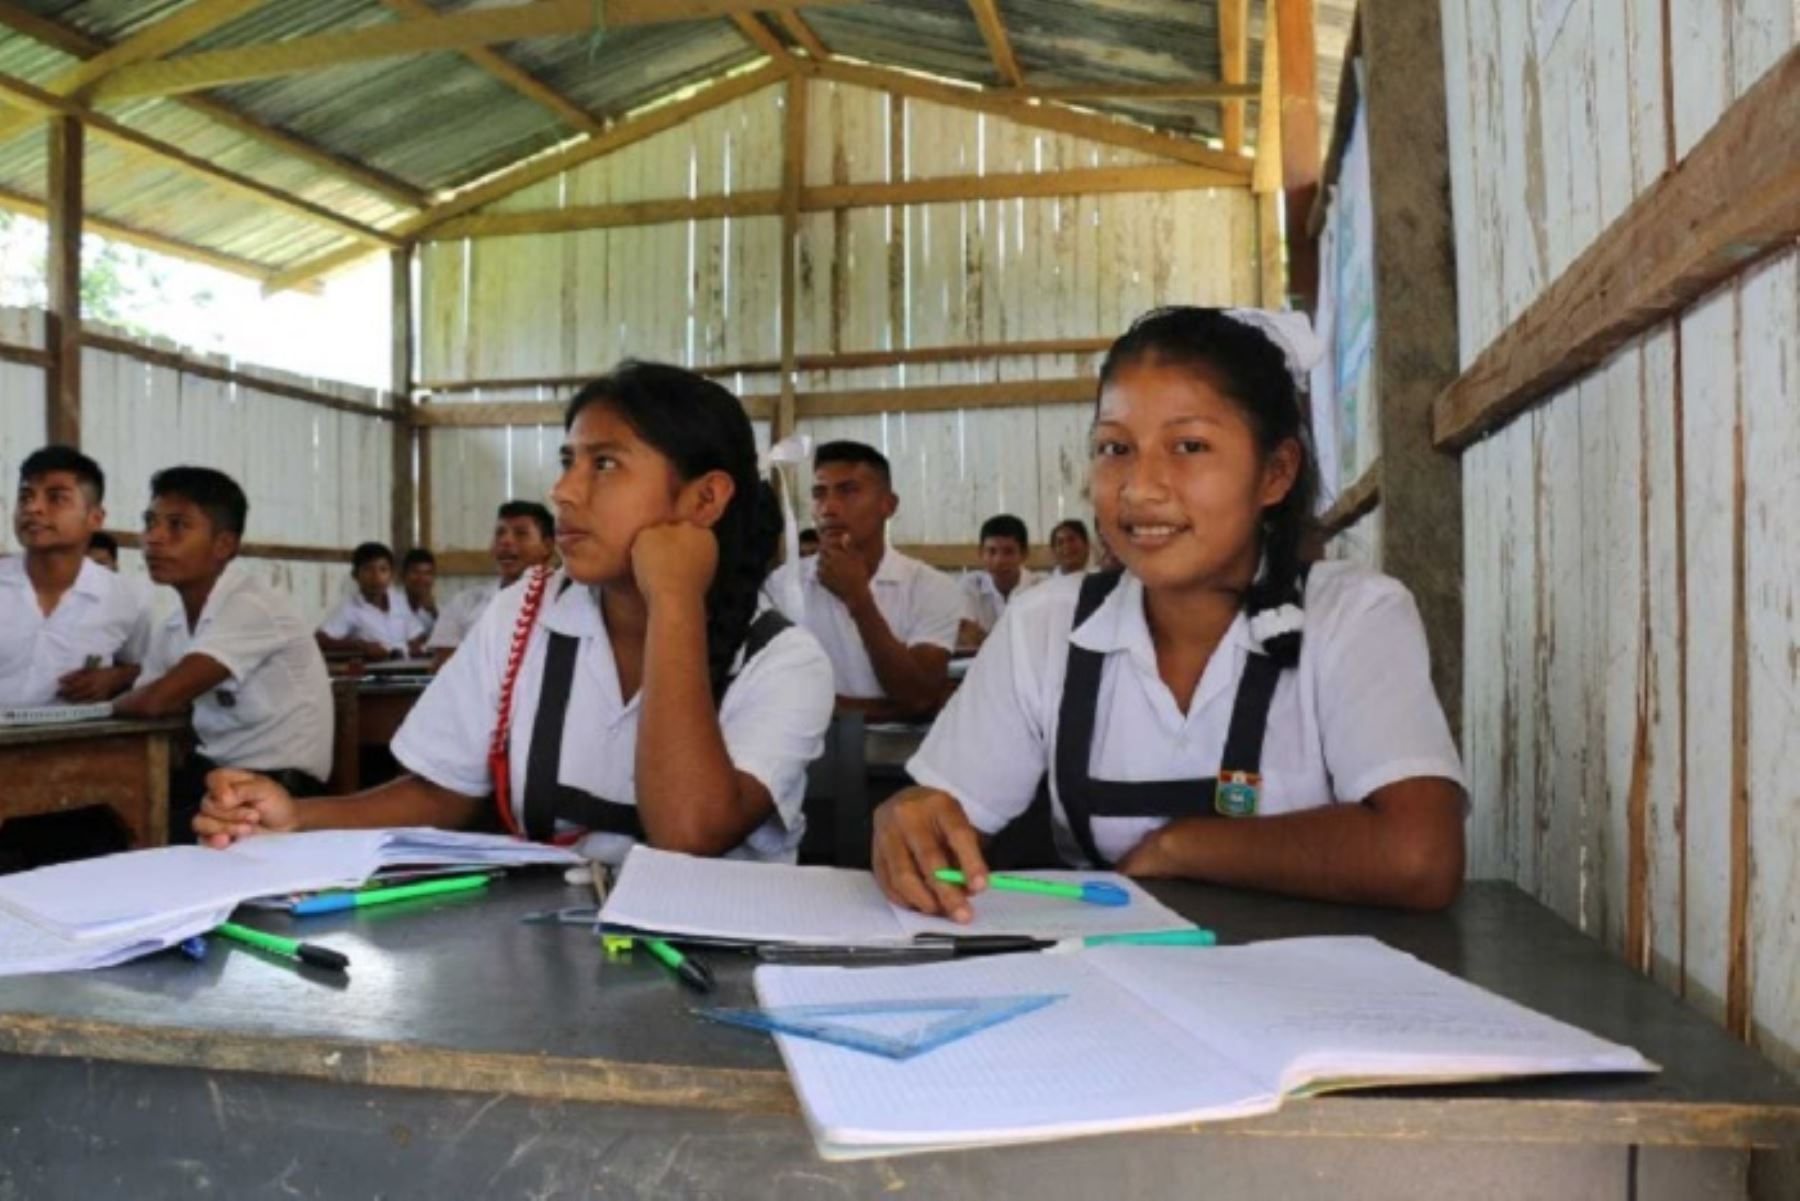 Funcionarios del Ministerio de Educación de Ecuador y representantes del Fondo de las Naciones Unidas para la Infancia (Unicef), resaltaron el modelo de servicio de secundaria tutorial que se implementa en la comunidad de Santa Rosa de Tistes del distrito de Chambara, en la provincia Concepción, región Junín.